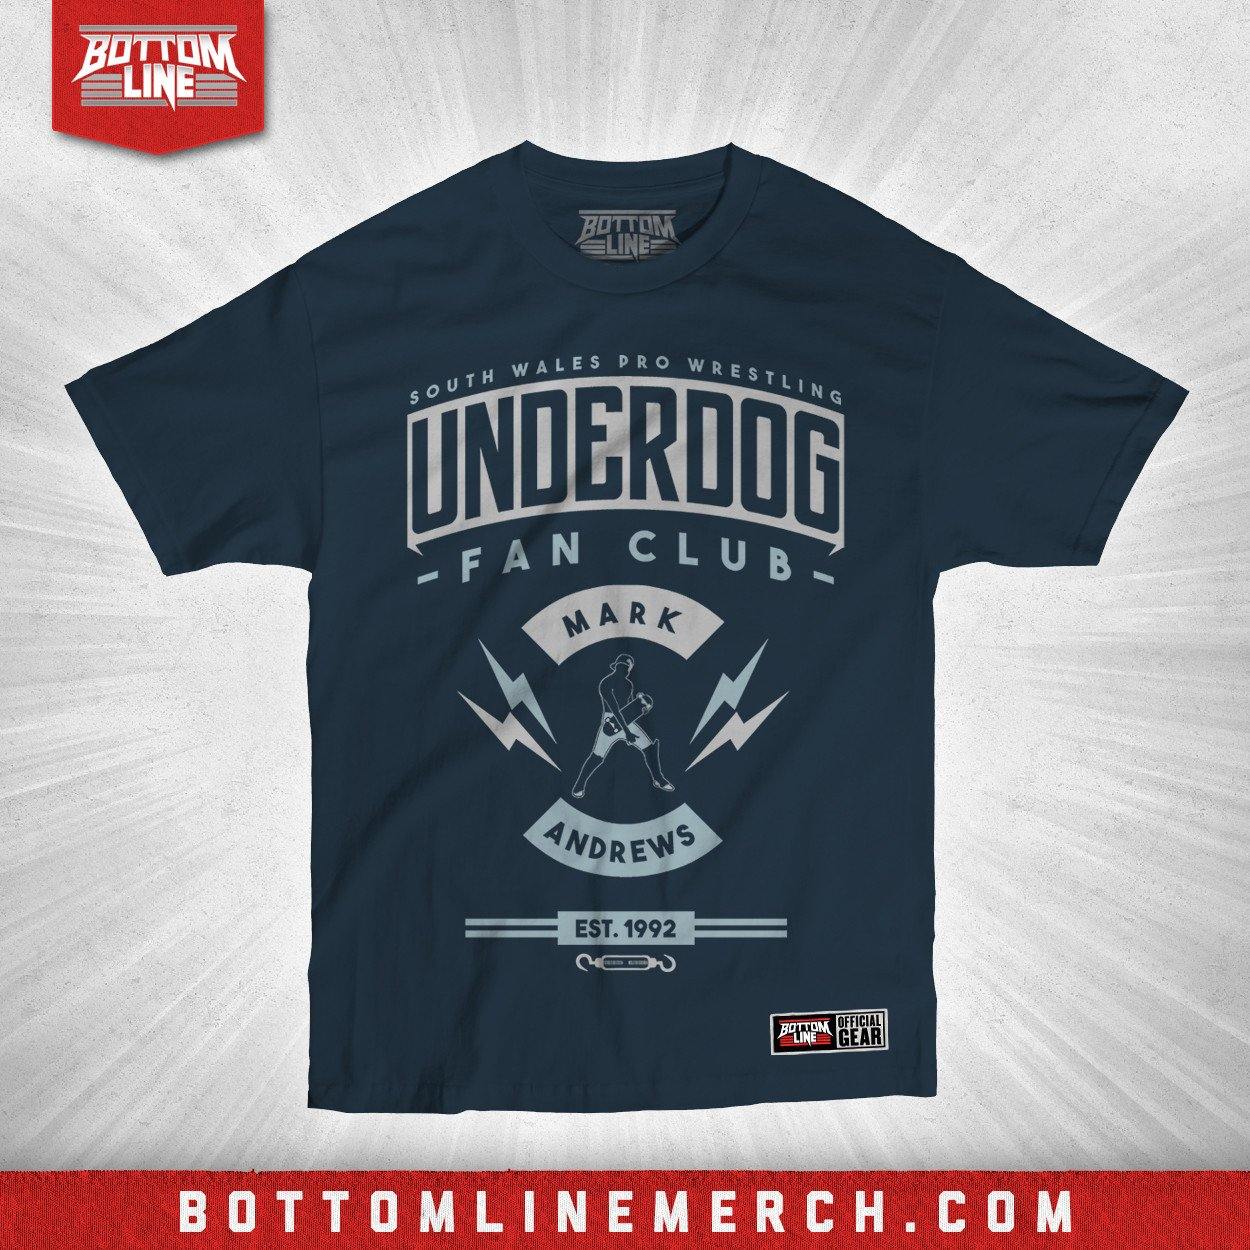 Buy Now – Mark Andrews "Underdog" Shirt – Wrestler & Wrestling Merch – Bottom Line